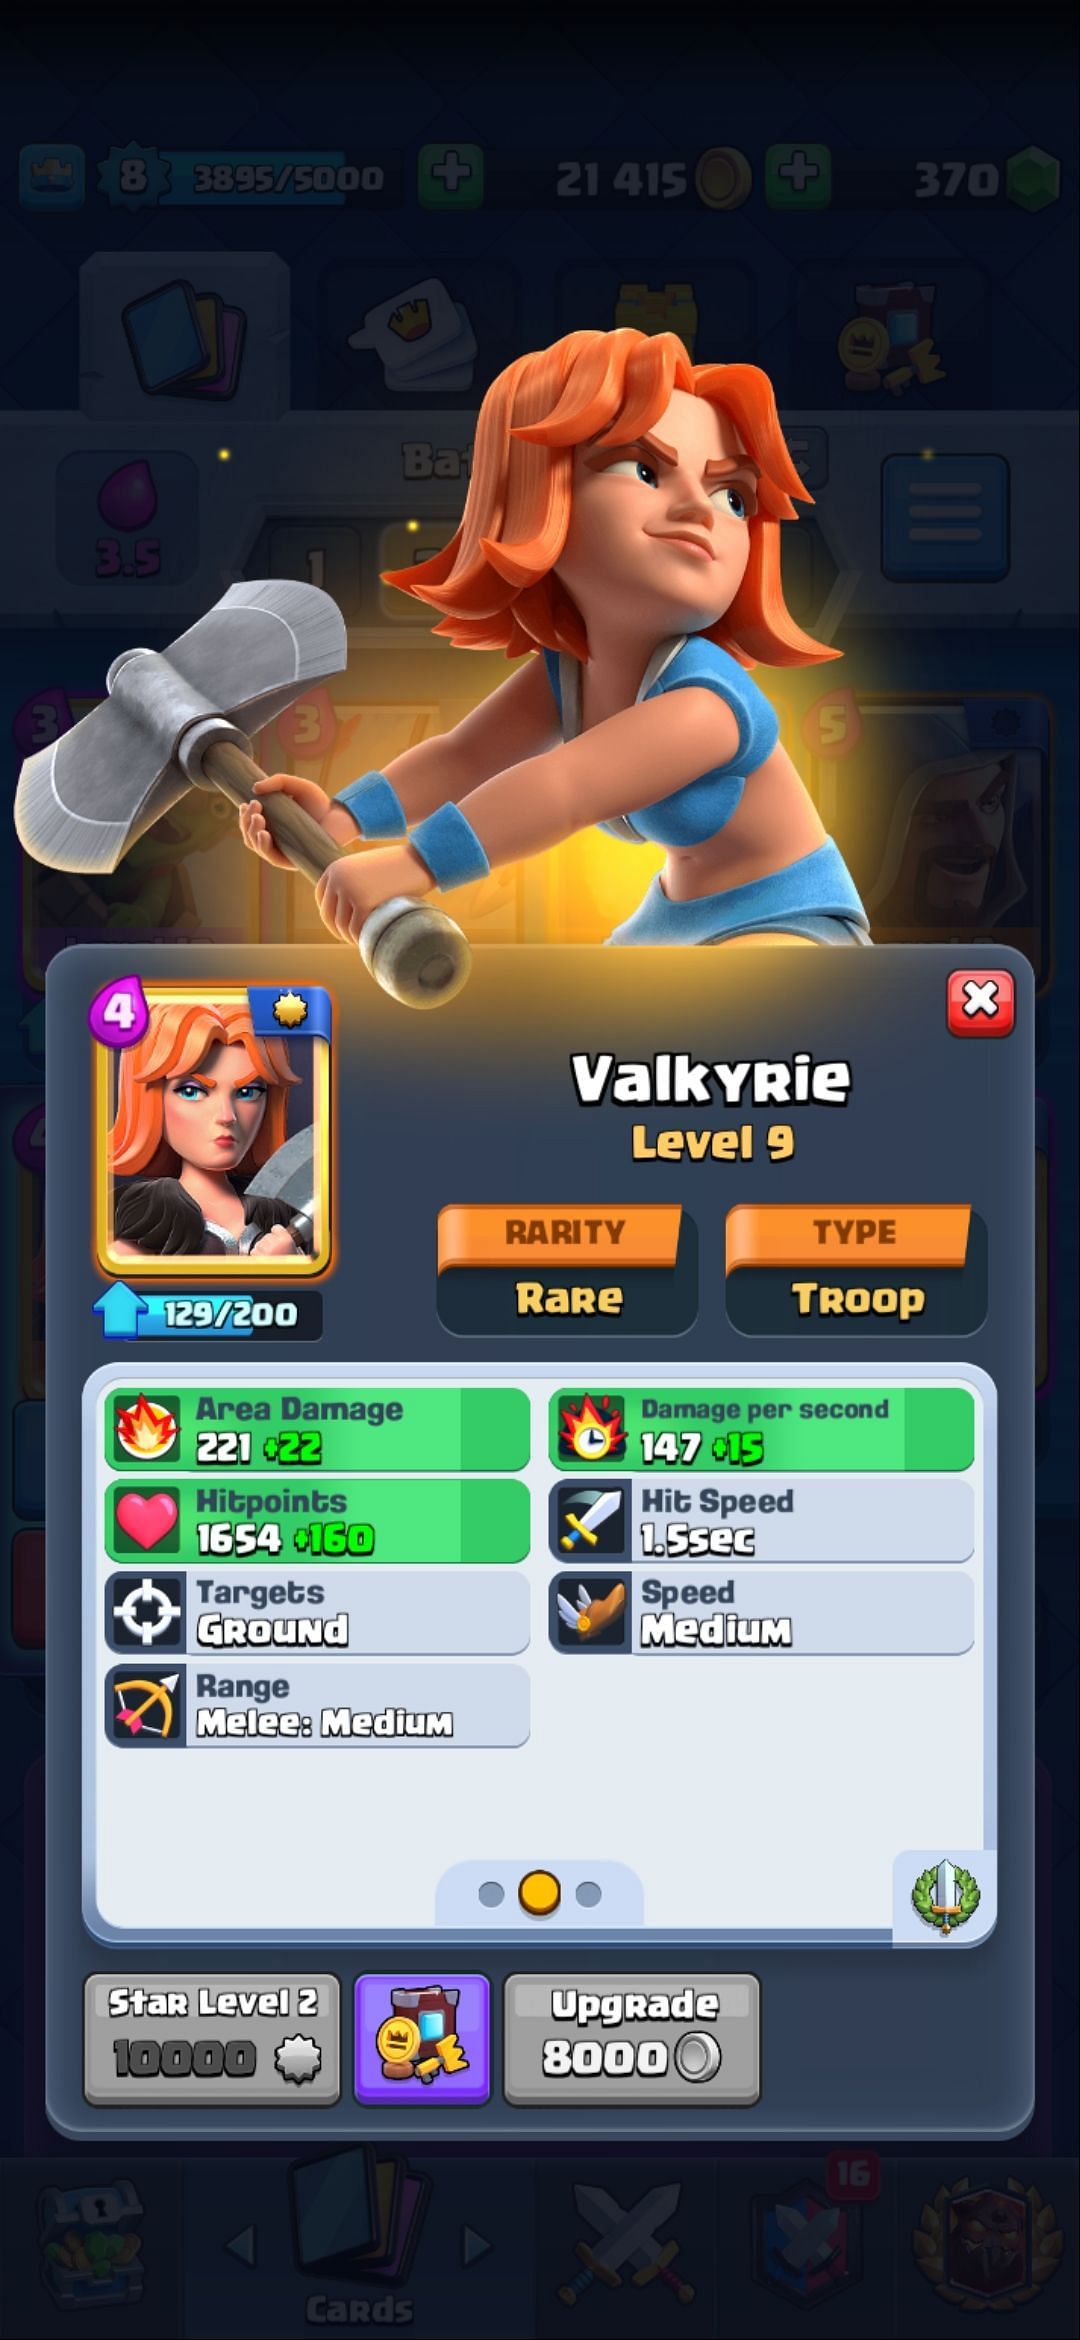 The Valkyrie card (Image via Sportskeeda)